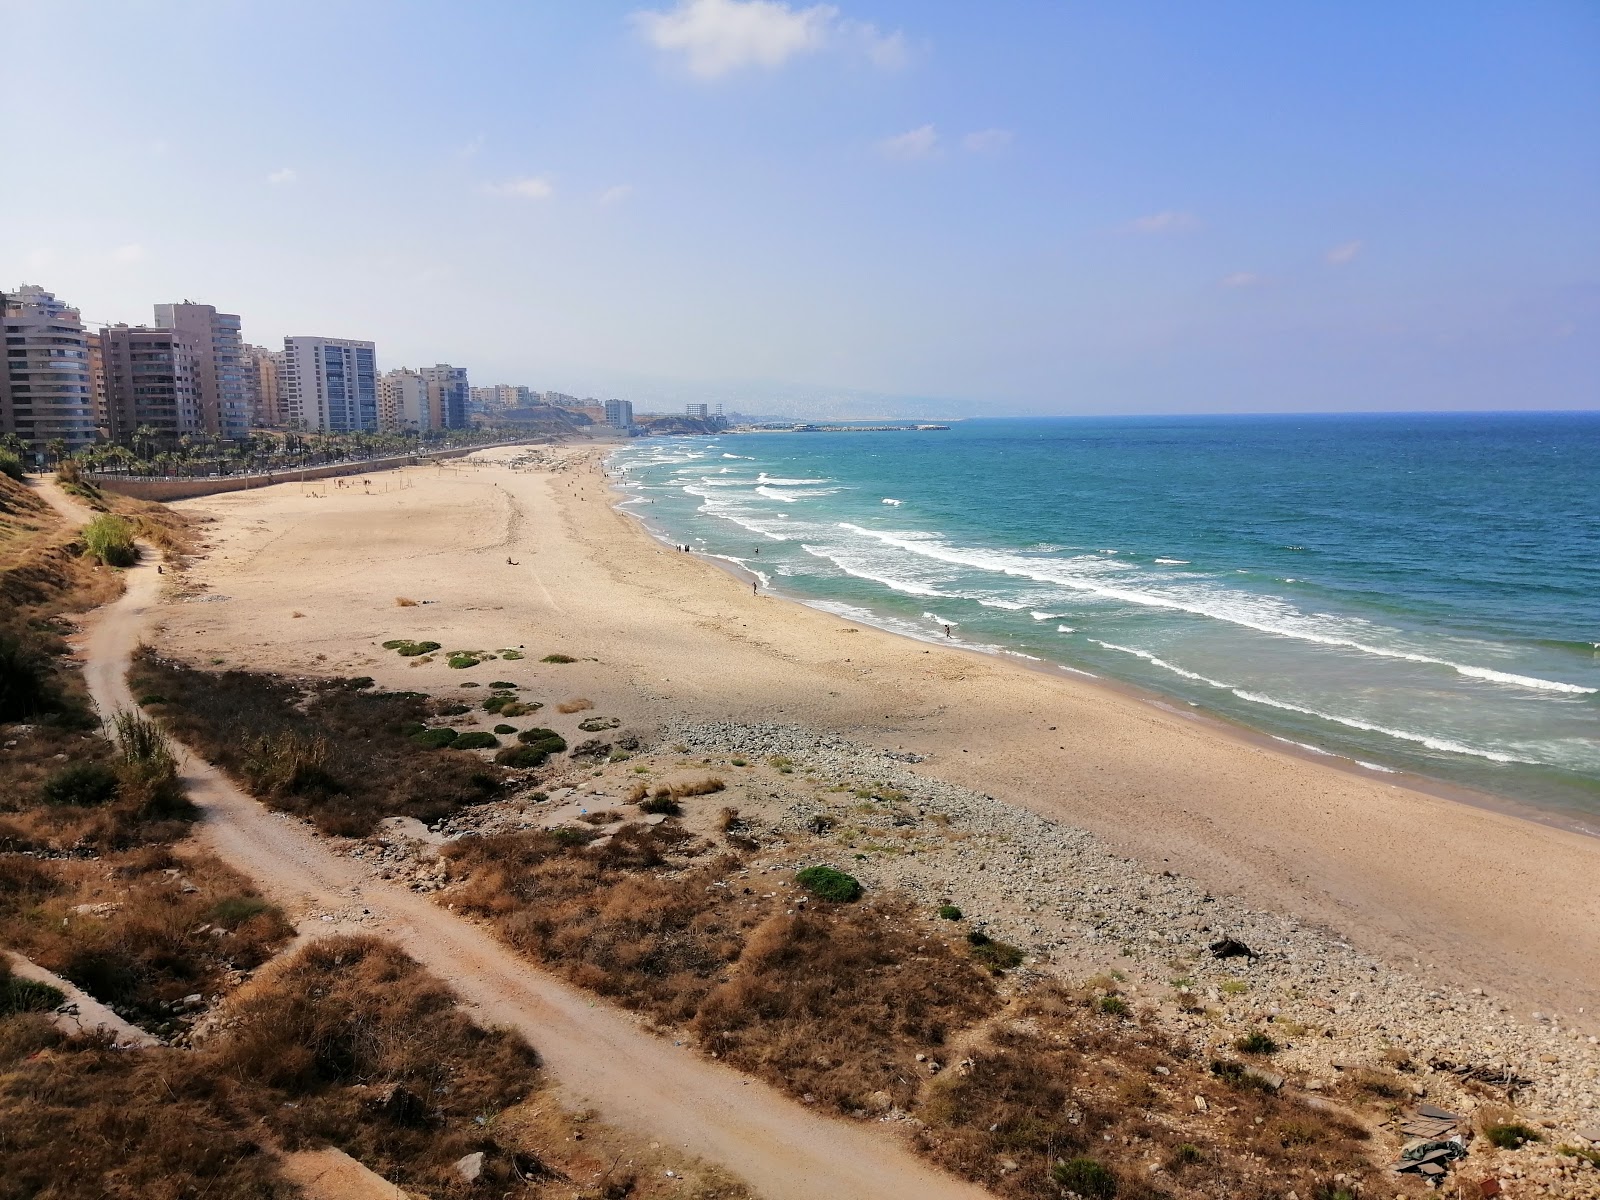 Ramlet Al Baida Beirut'in fotoğrafı parlak kum yüzey ile